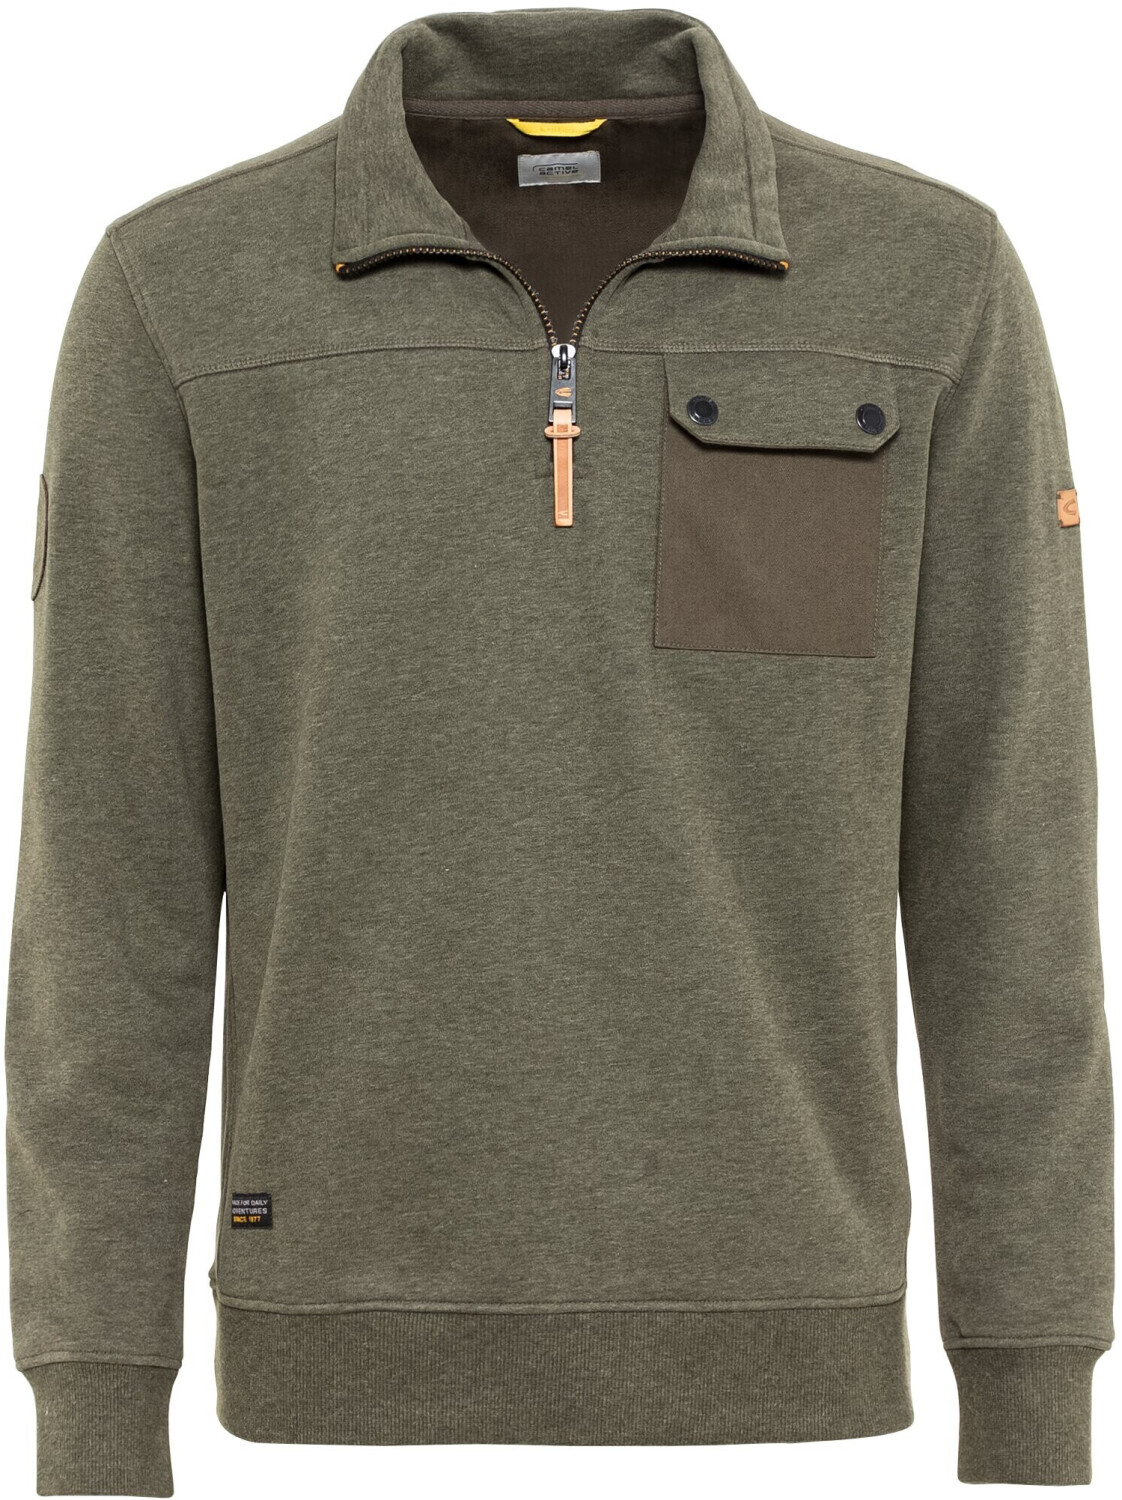 Camel Active Sweatshirt Troyer mit Stehkragen (409420-8W14-93) olive brown  ab 70,08 € | Preisvergleich bei